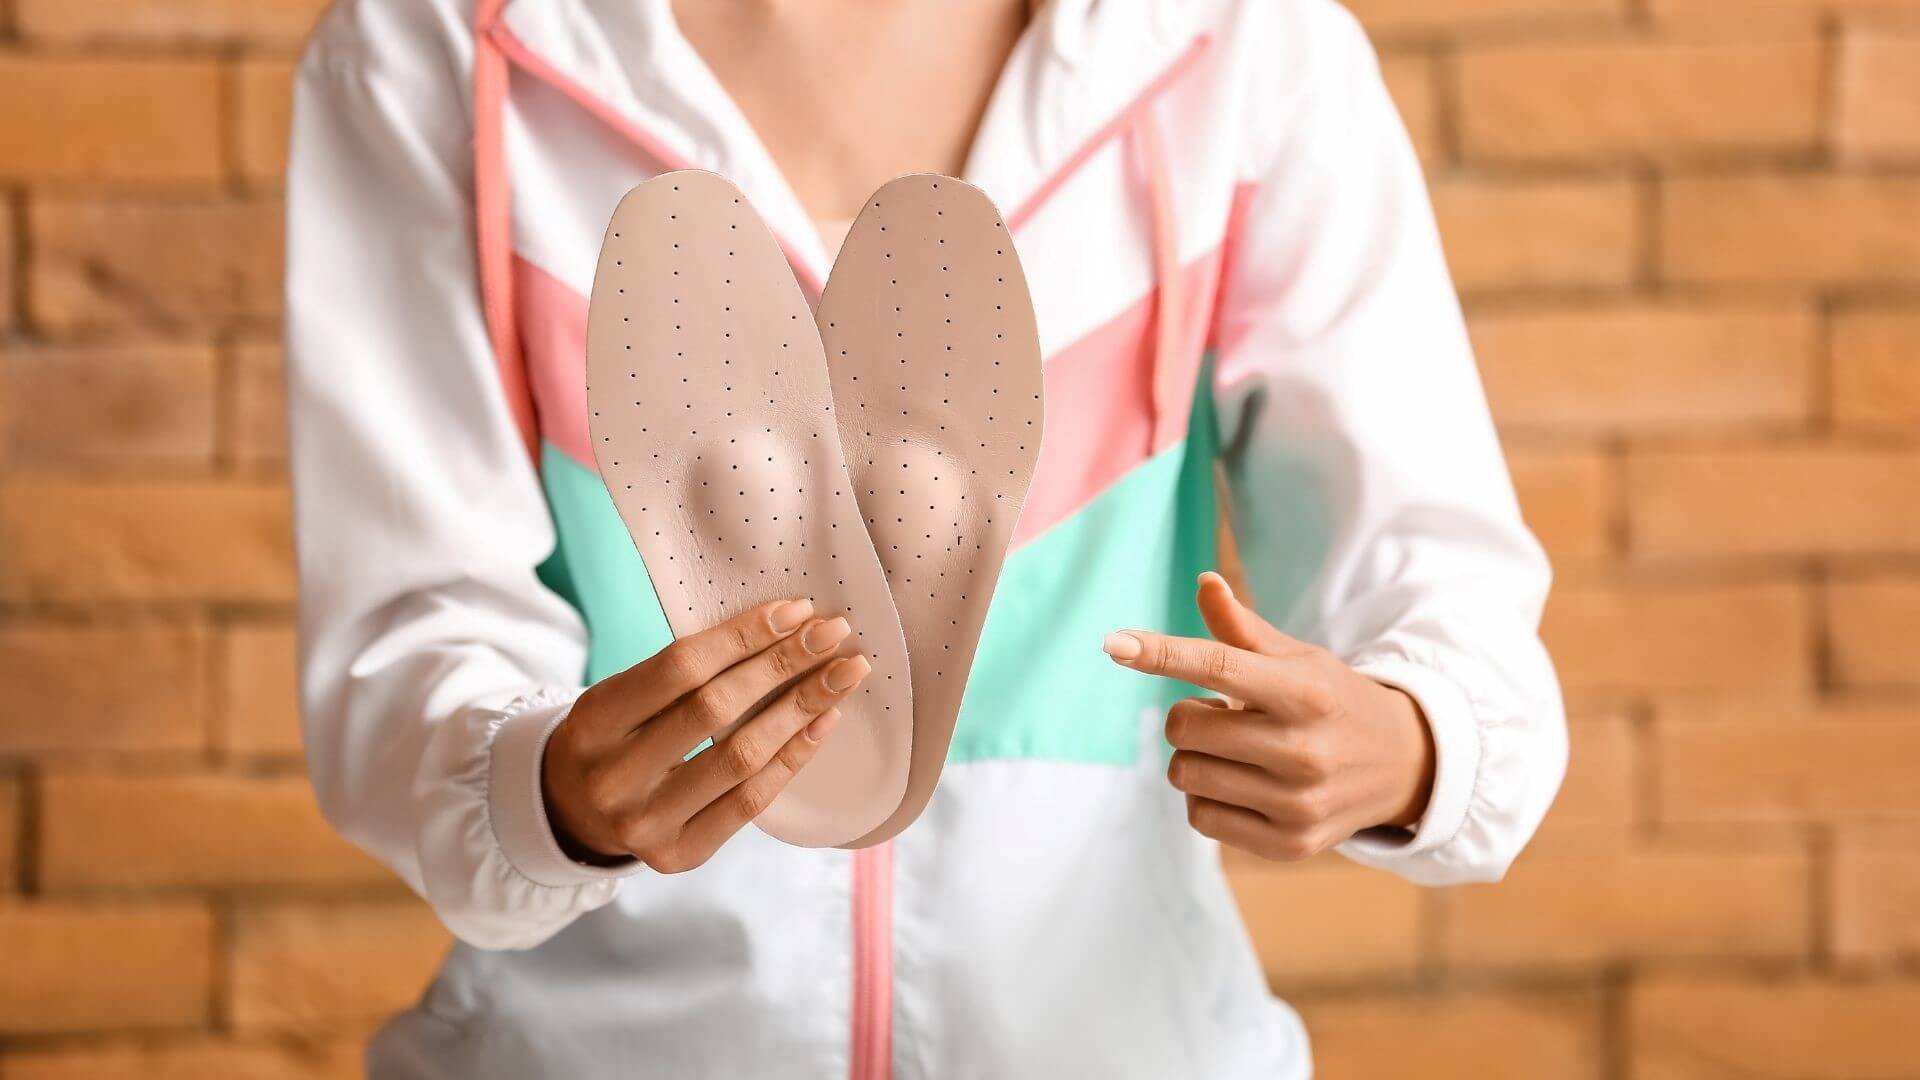 Правильно подобранная обувь с индивидуальными ортопедическими стельками поможет стабилизировать стопу и голеностоп во время занятий и избежать ненужных перегрузок